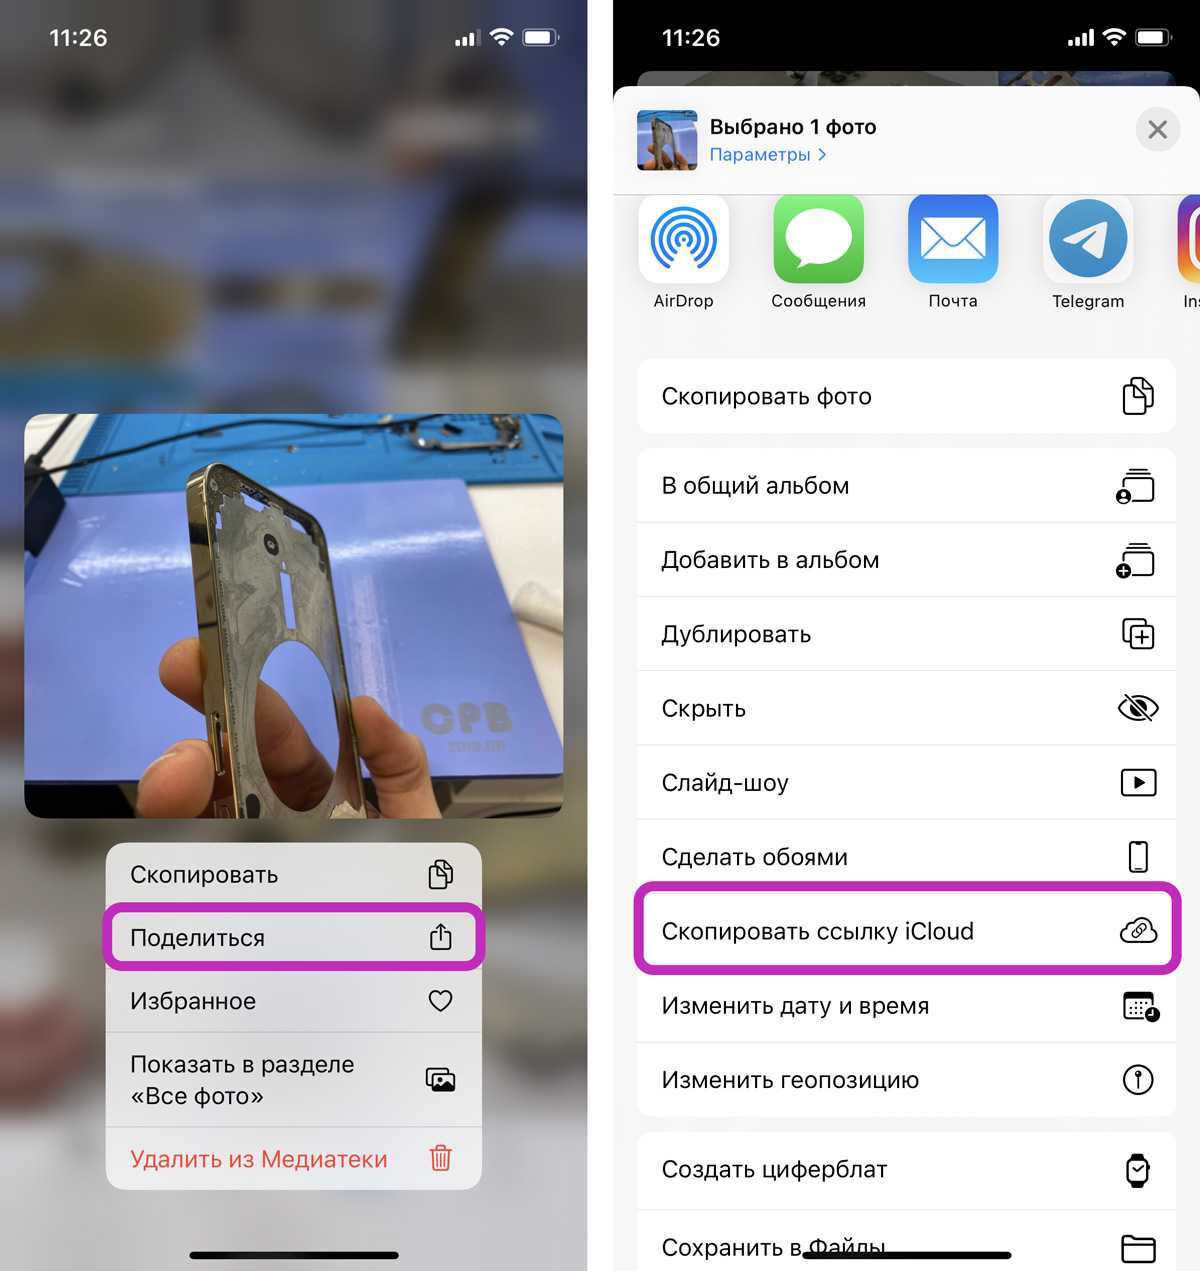 Передача фотографий через Bluetooth на телефонах Apple Использование штатных сервисов и сторонних приложений Ознакомление с возможными методами передачи